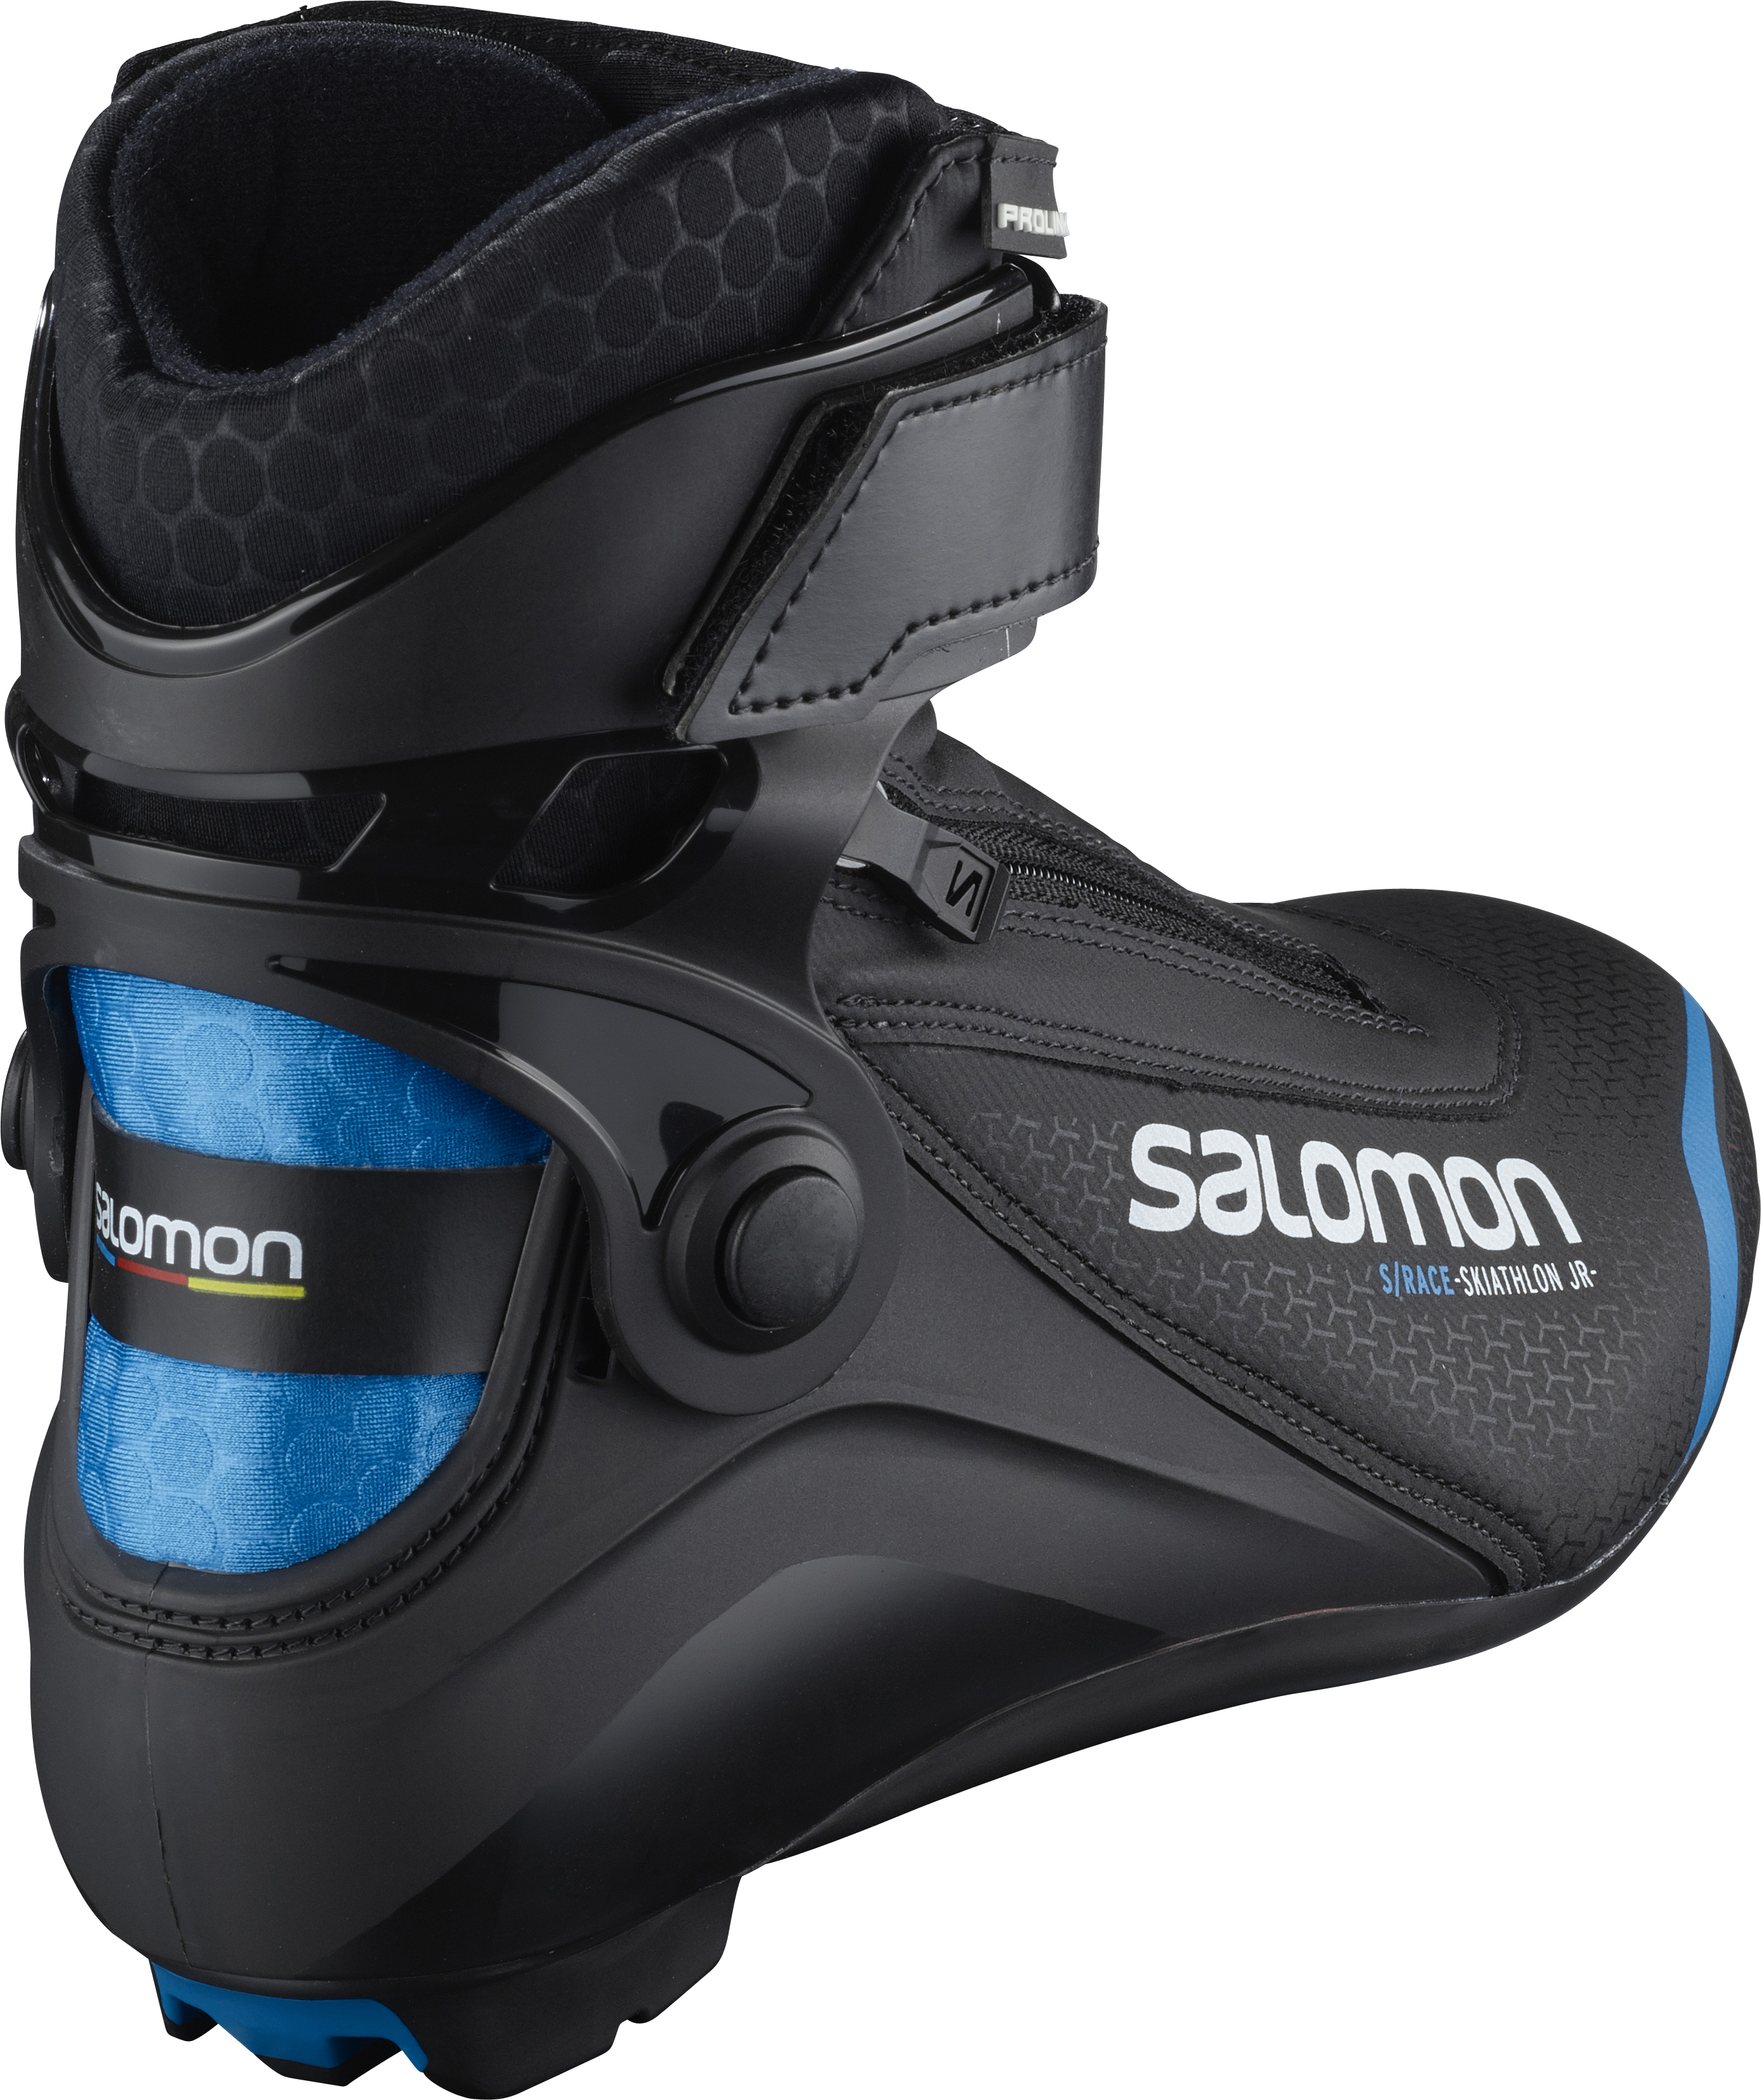 Salomon S/RACE SKIATHLON PROLINK JR